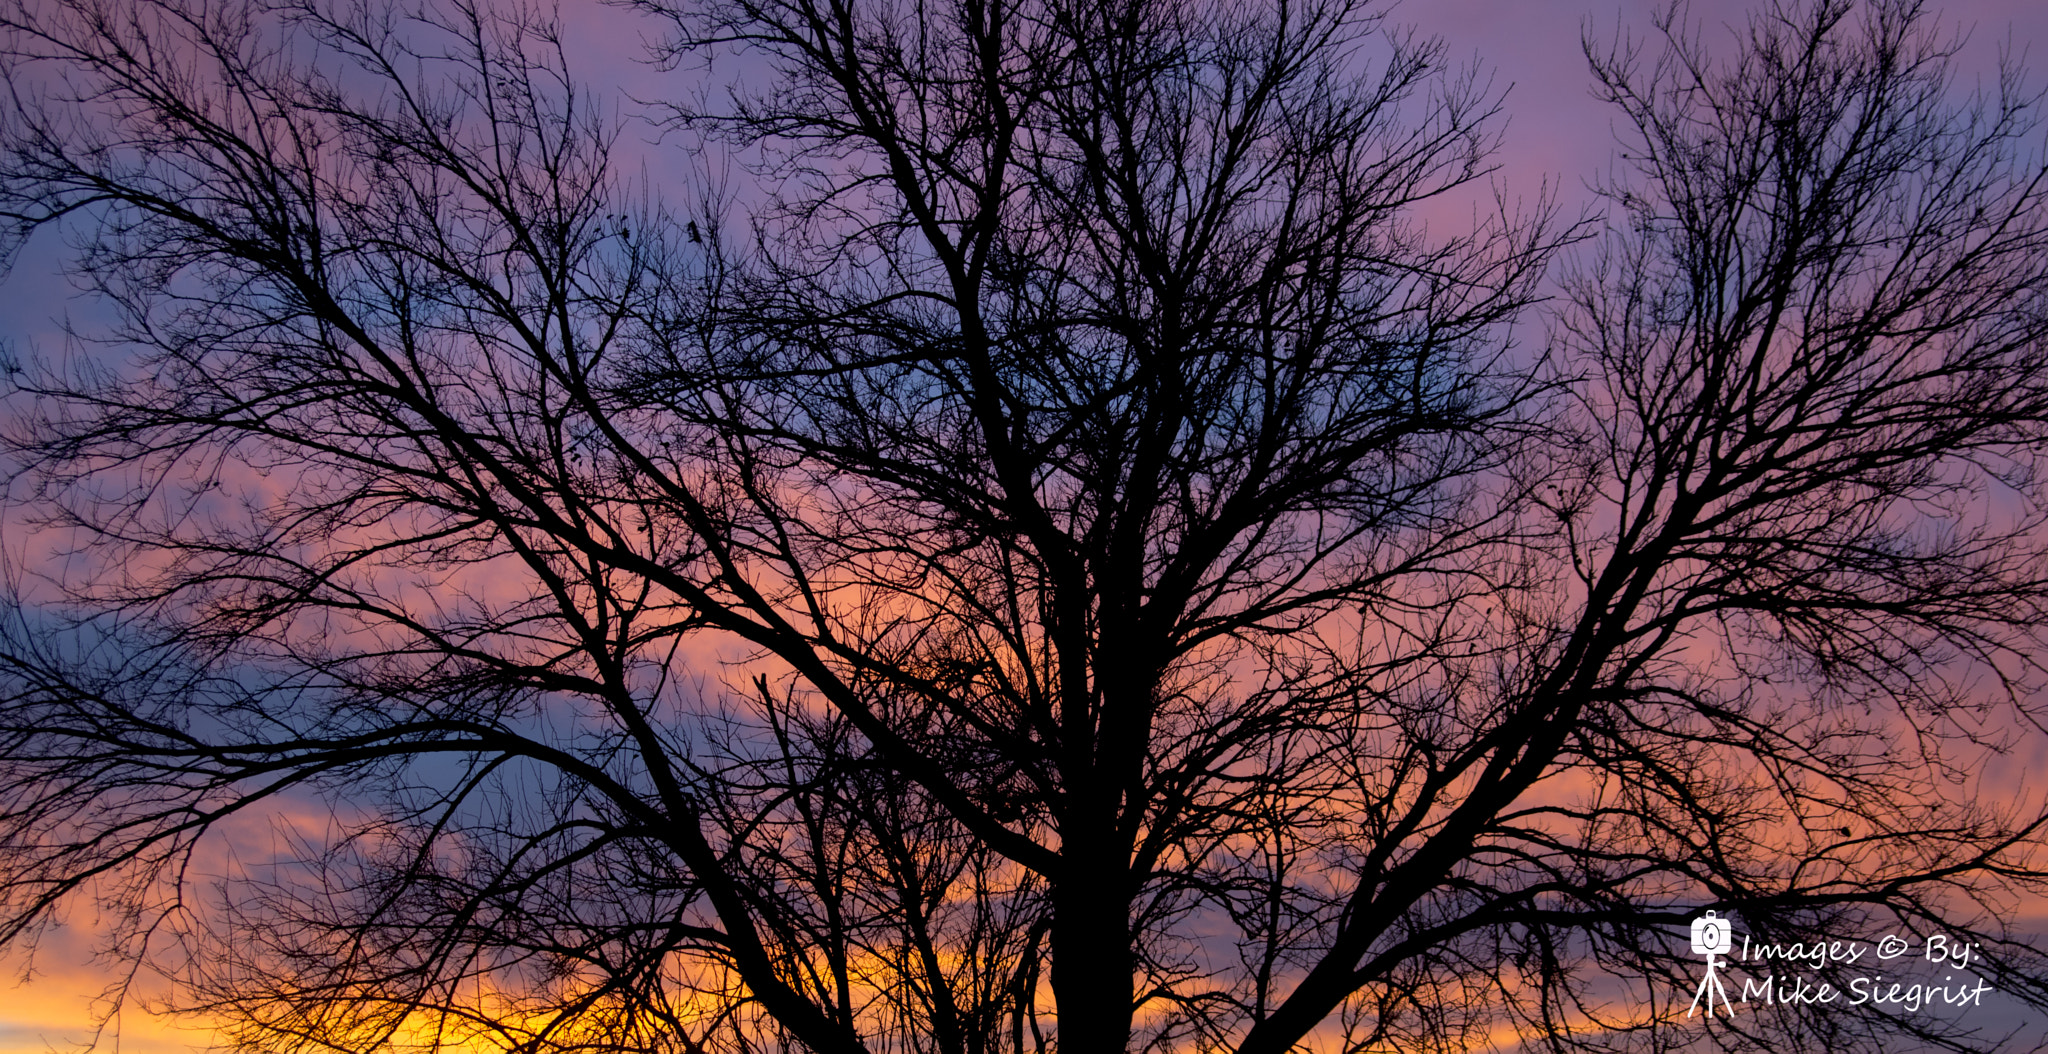 Nikon D3200 + Tamron AF 28-75mm F2.8 XR Di LD Aspherical (IF) sample photo. Kansas sunsets photography